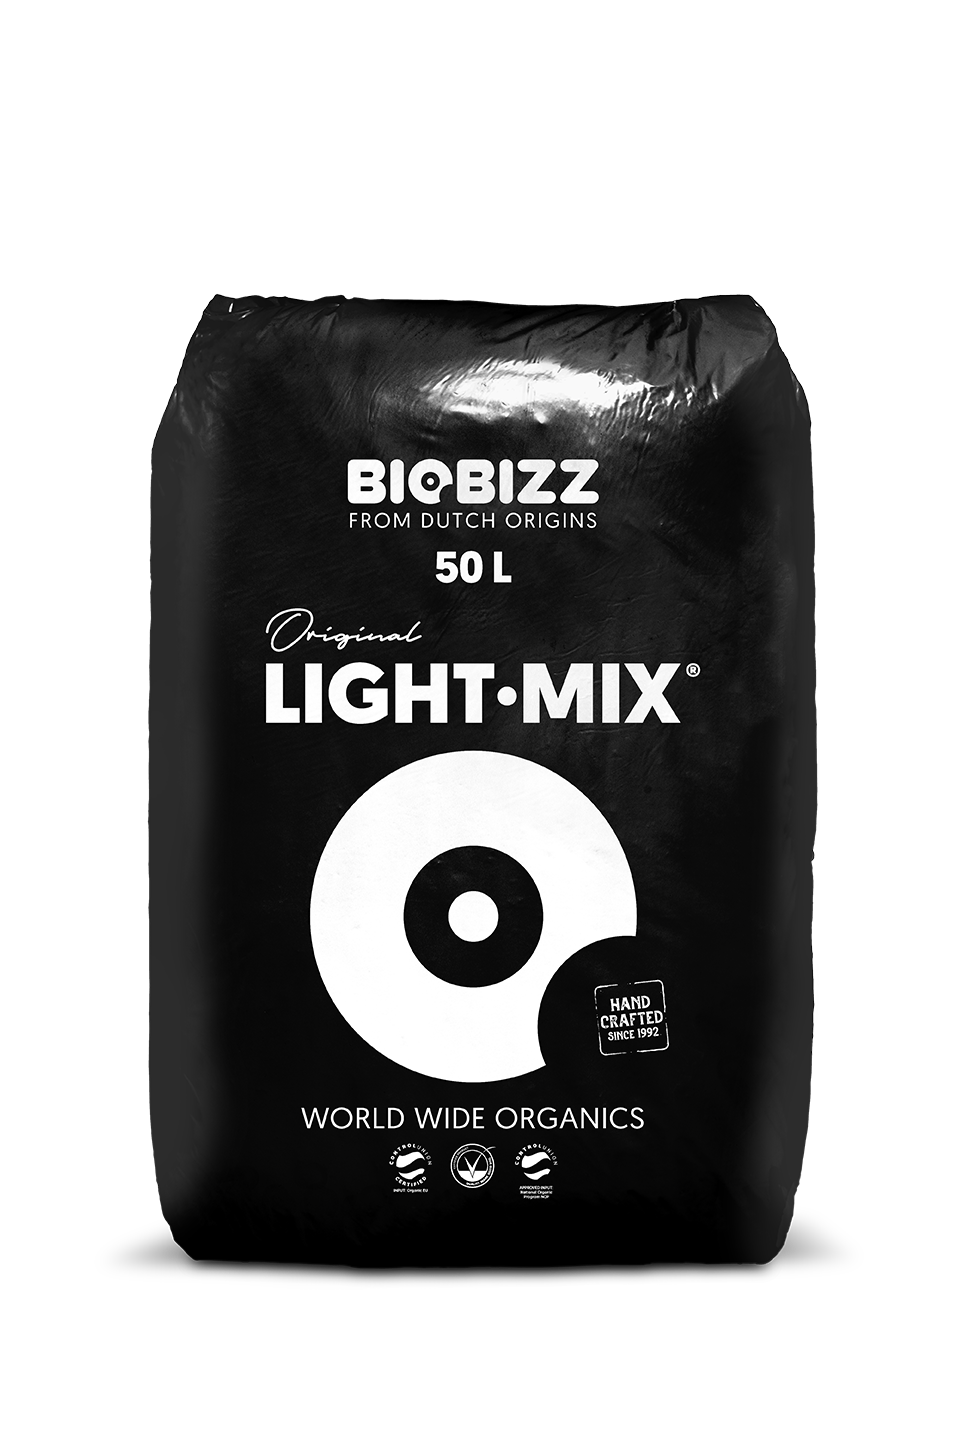 Biobizz Light-Mix 50L